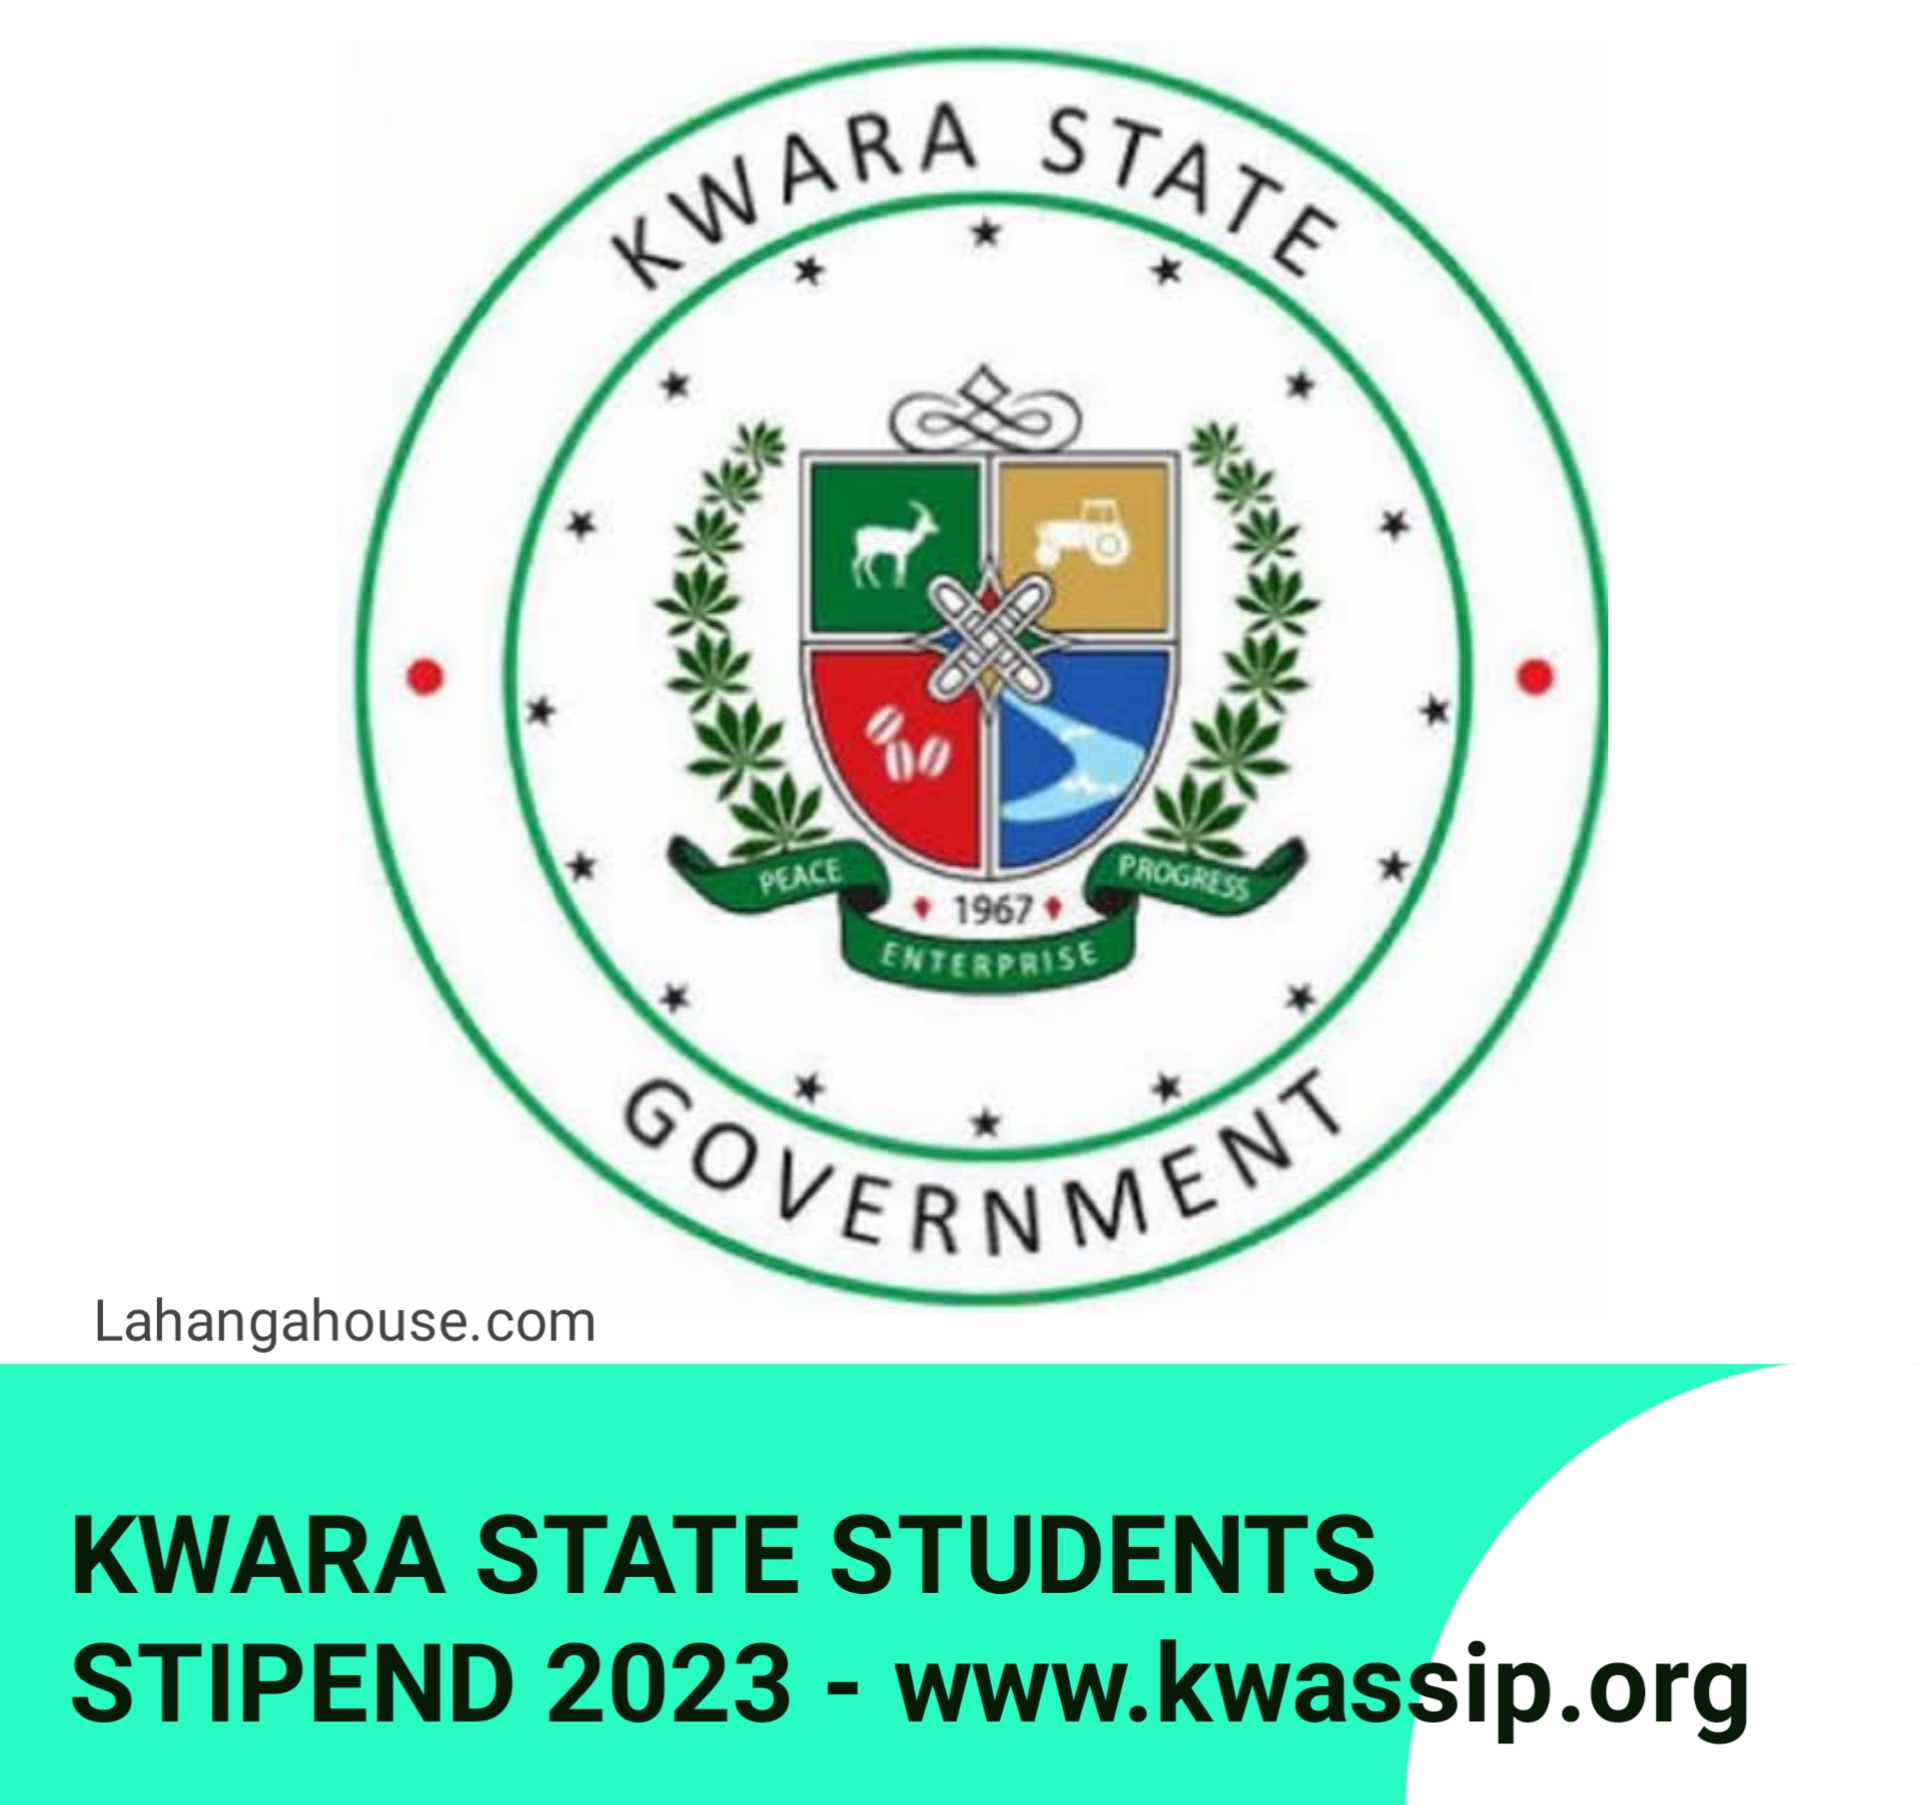 KWARA STATE STUDENTS STIPEND 2023